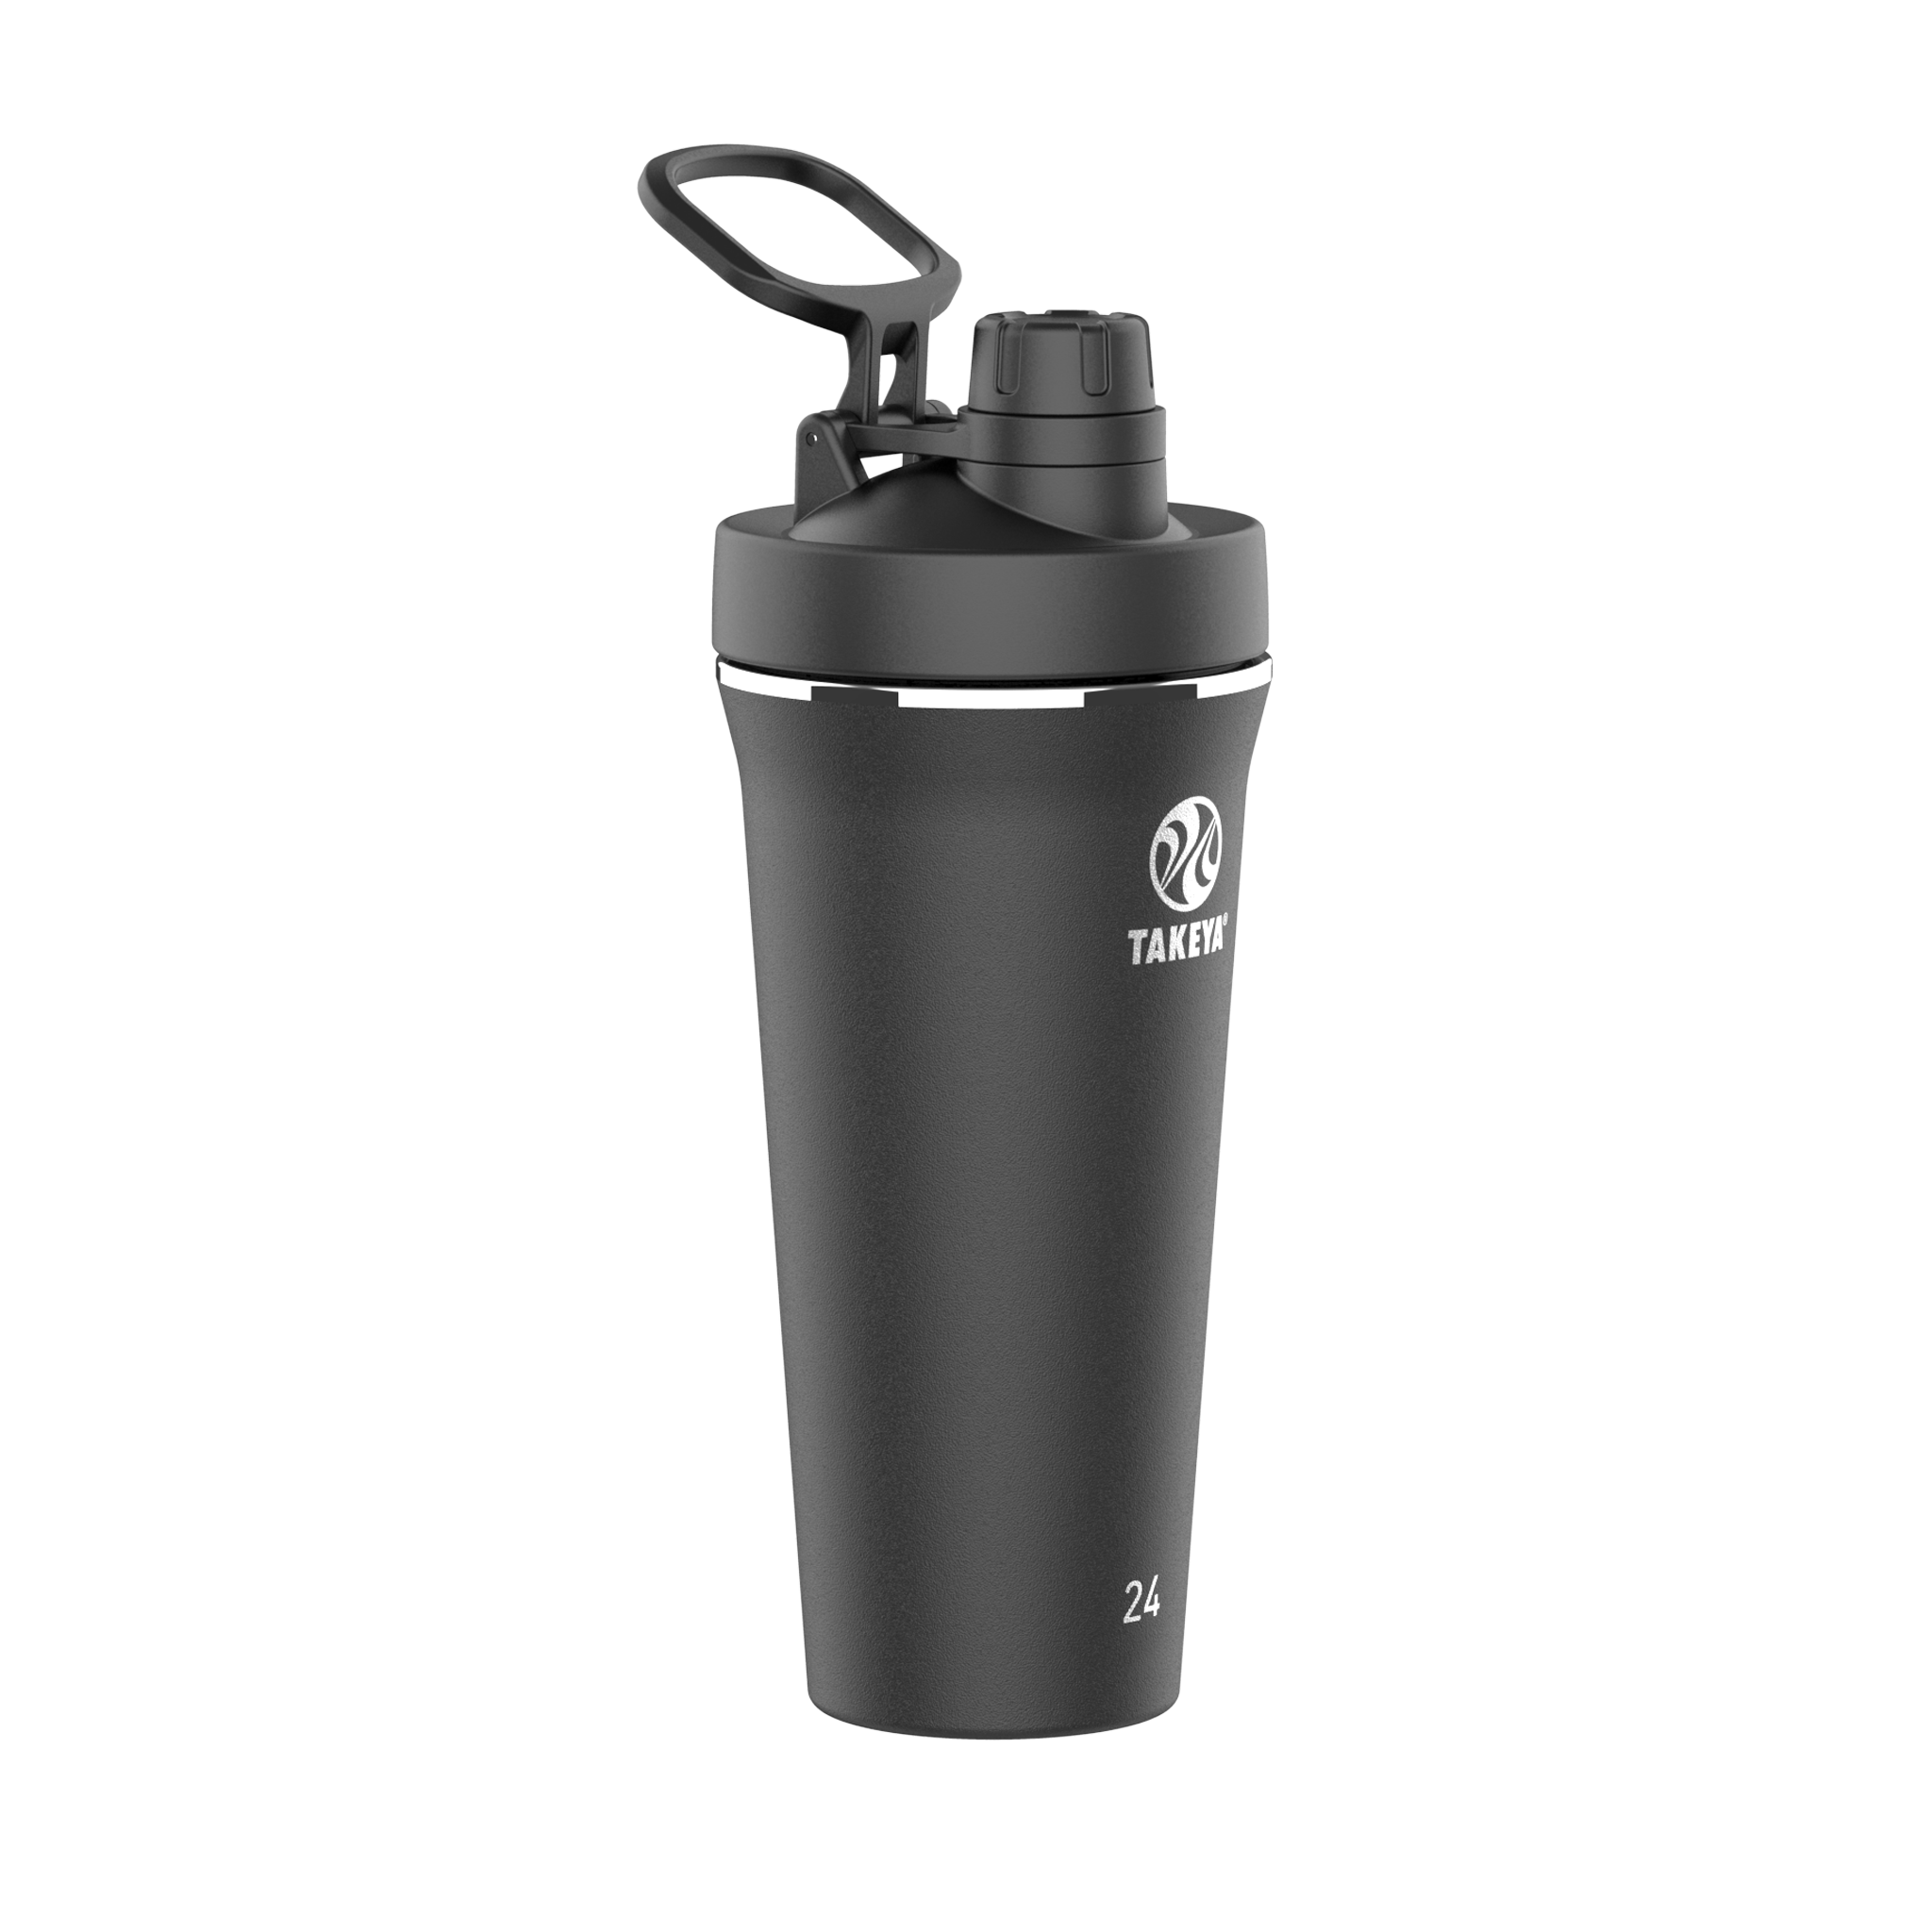 BlenderBottle Pro Series Shaker Bottle, 24-Ounce - Black